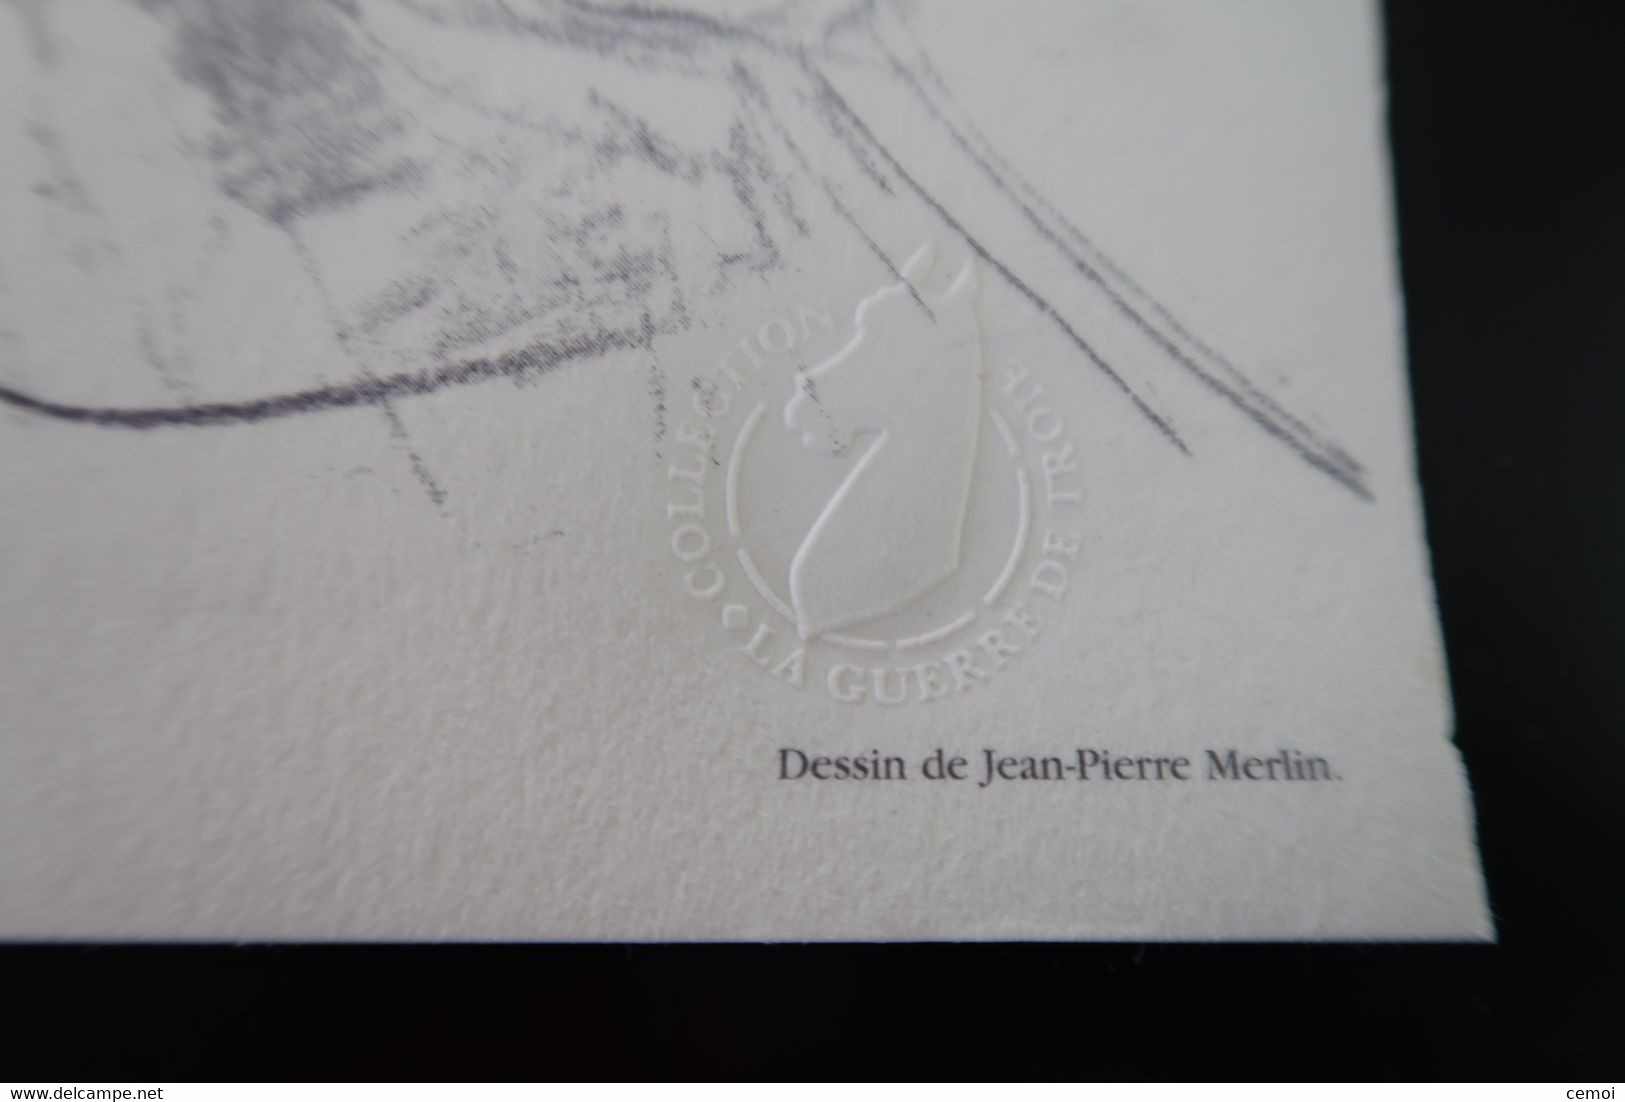 La guerre de Troie - Premier temps - Dessin de Jean-Pierre Merlin, texte de Servane Parisse, calligraphie de Patrick Ben